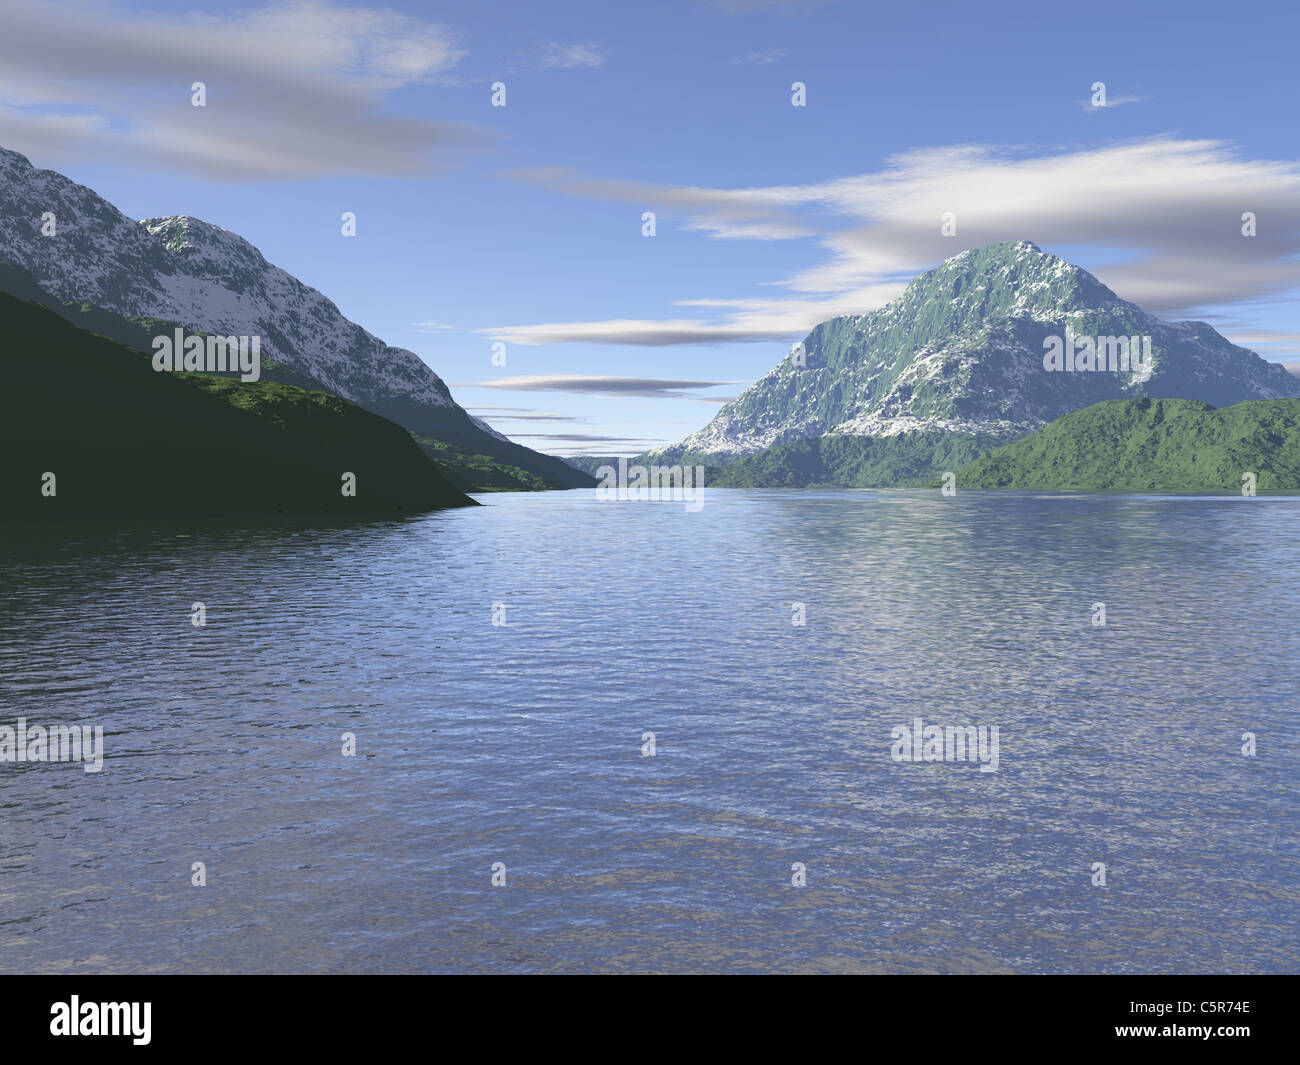 Paysage de montagne créé par ordinateur avec un lac au premier plan Banque D'Images